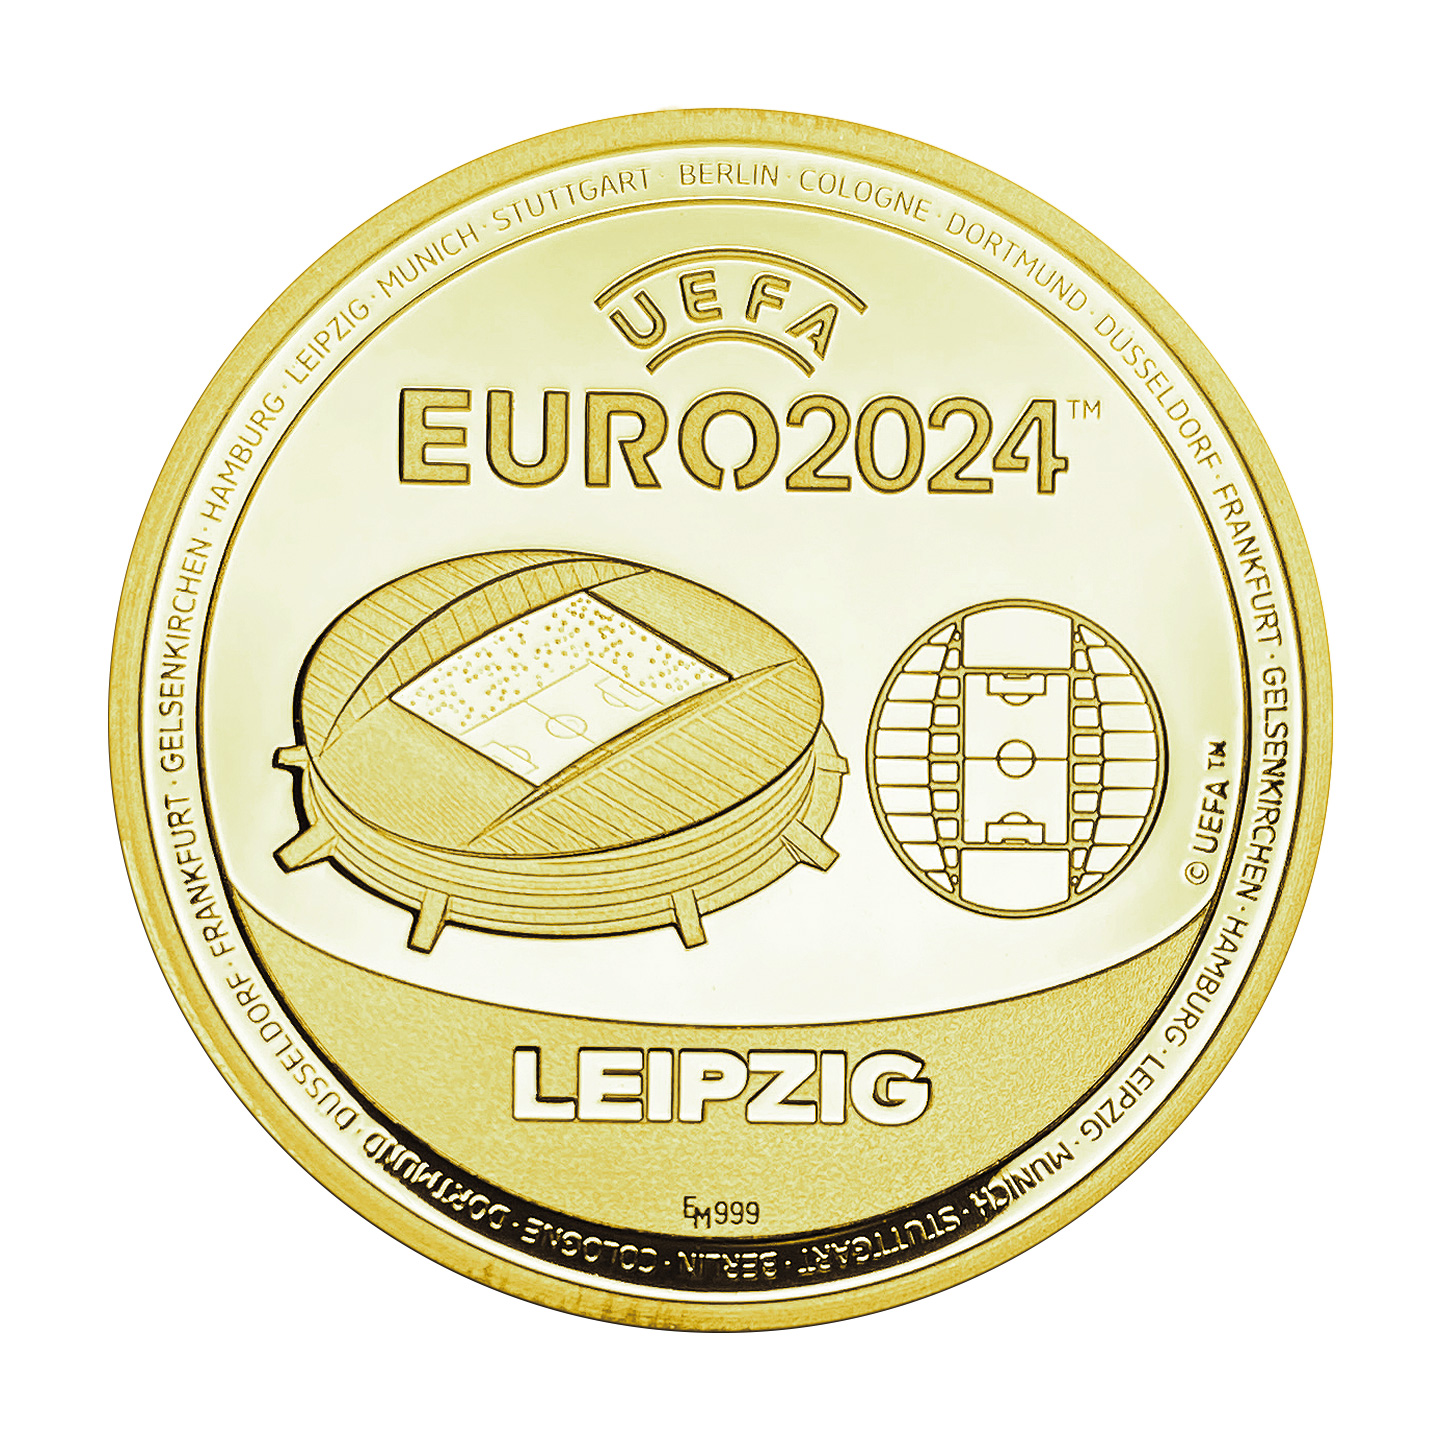 UEFA EURO 2024 Leipzig - gold